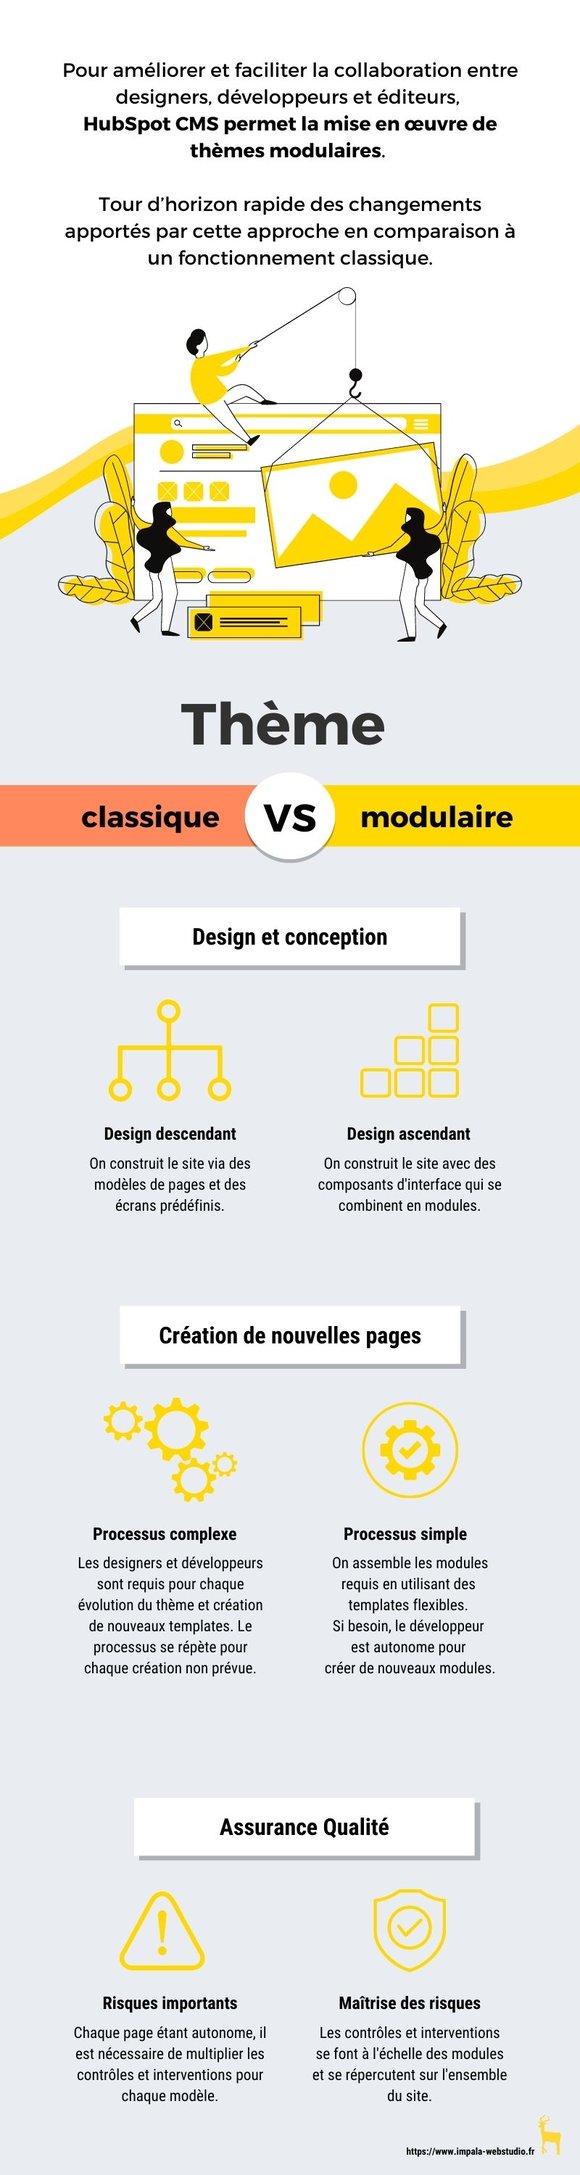 Infographie de comparaison entre un thème modulaire et un thème classique